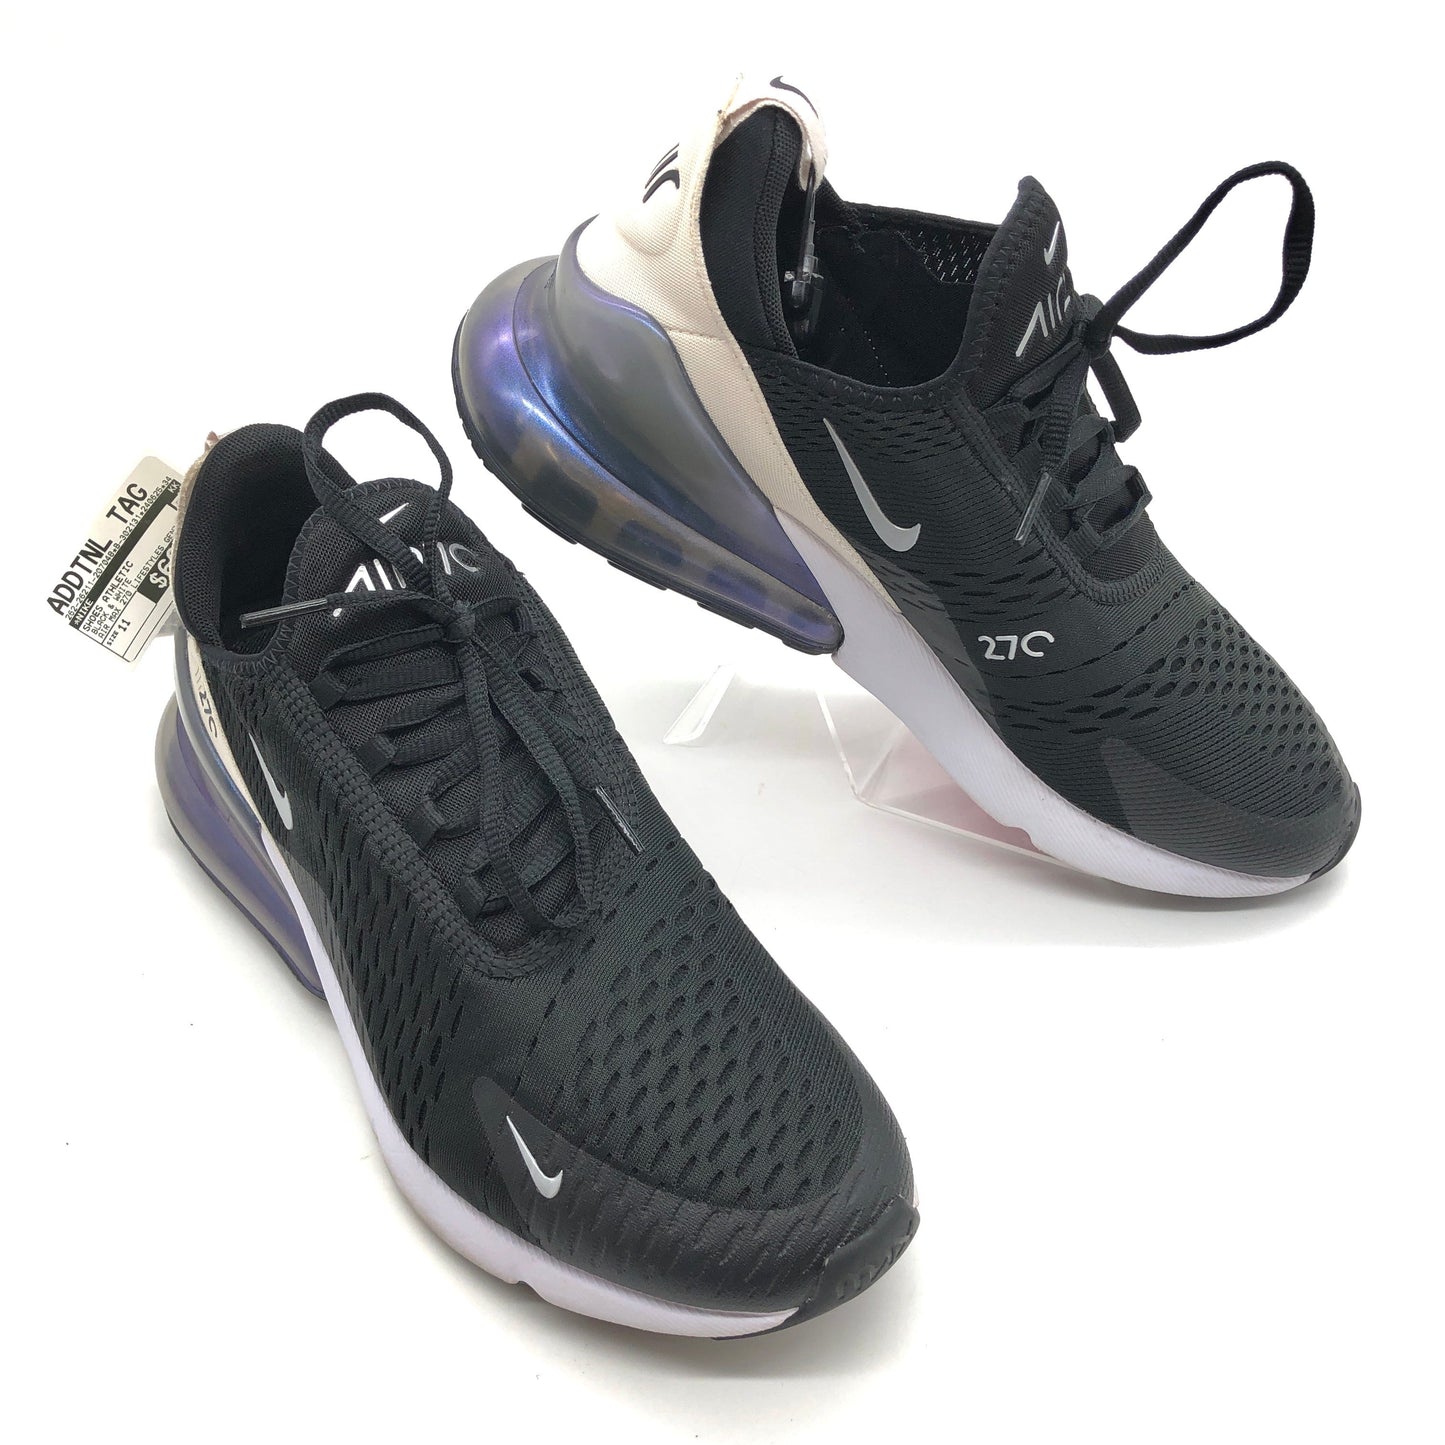 Black & White Shoes Athletic Nike, Size 11